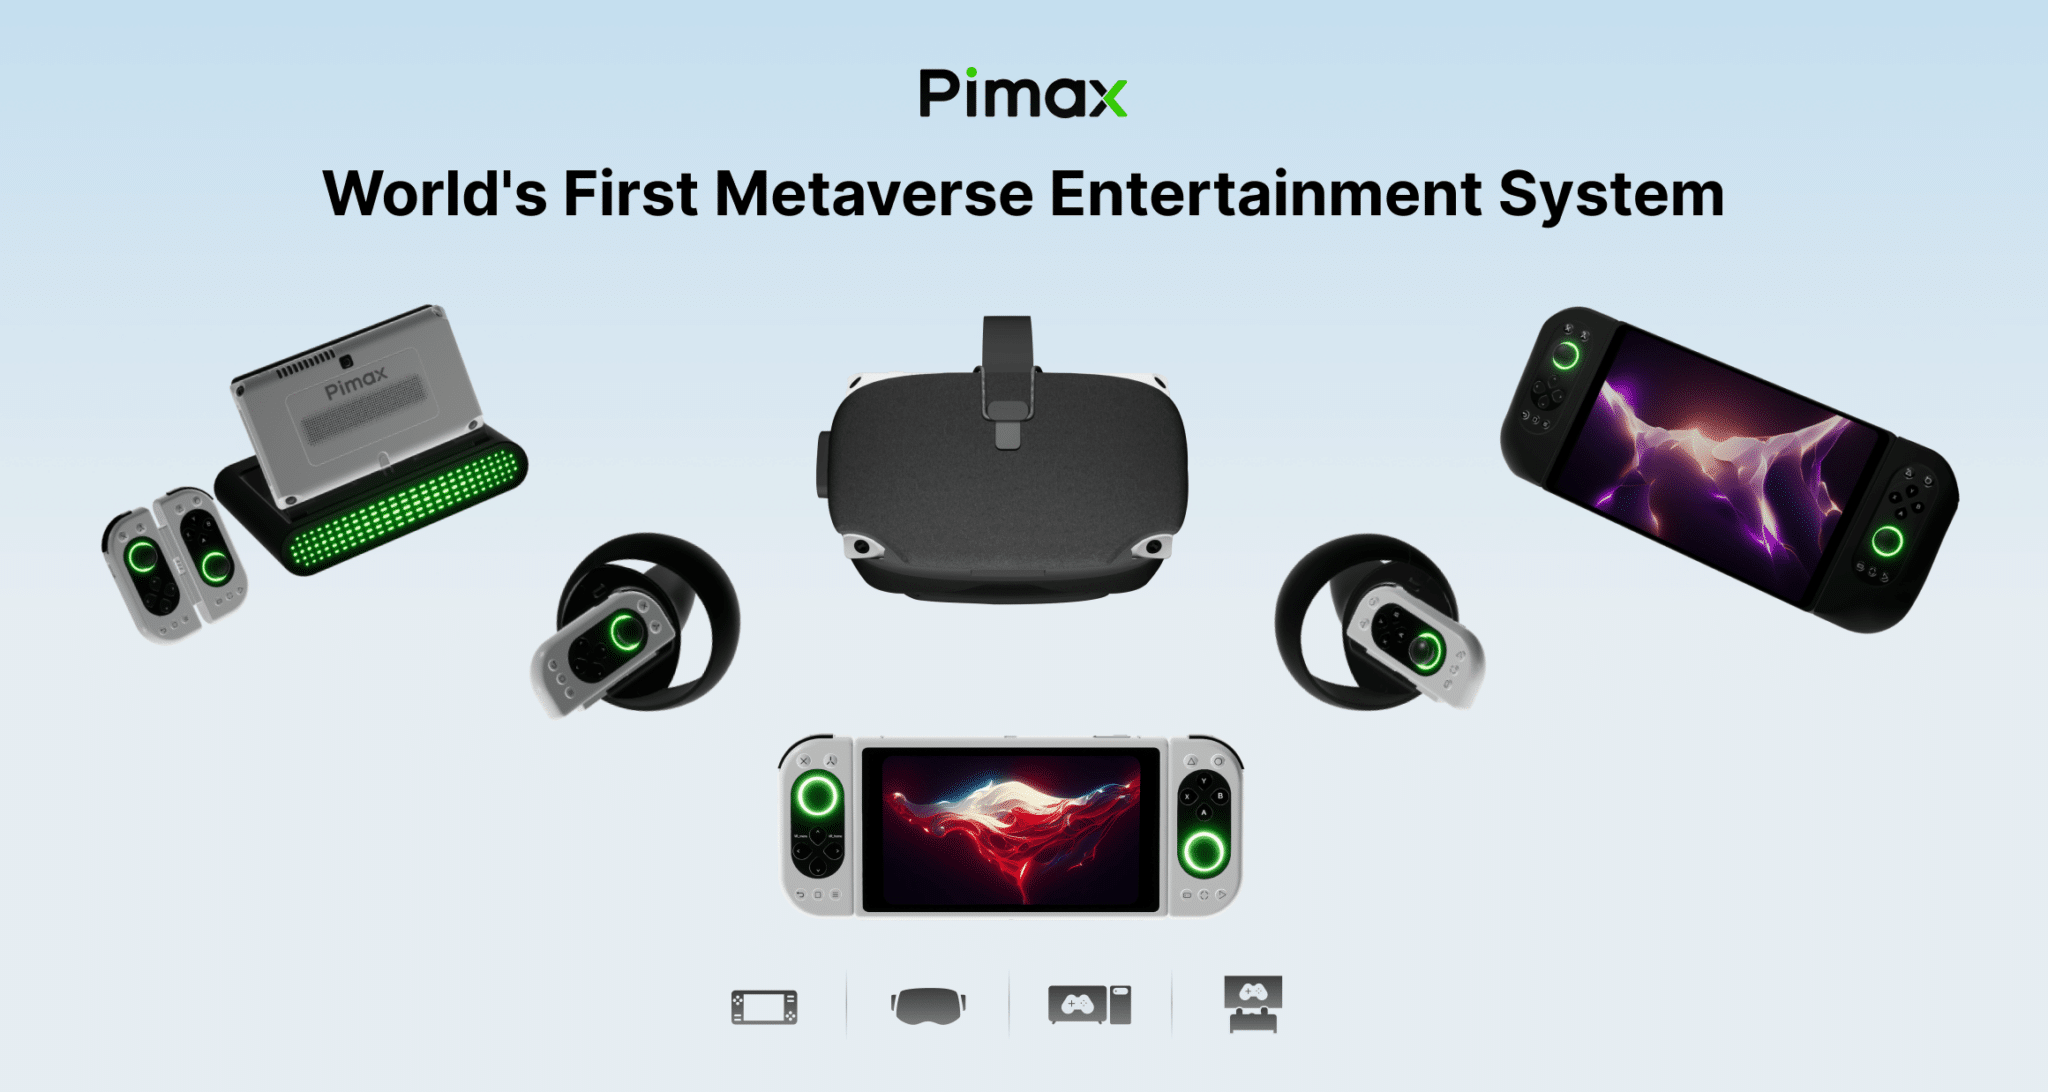 Win Pimax Portal Kickstarter Giveaway